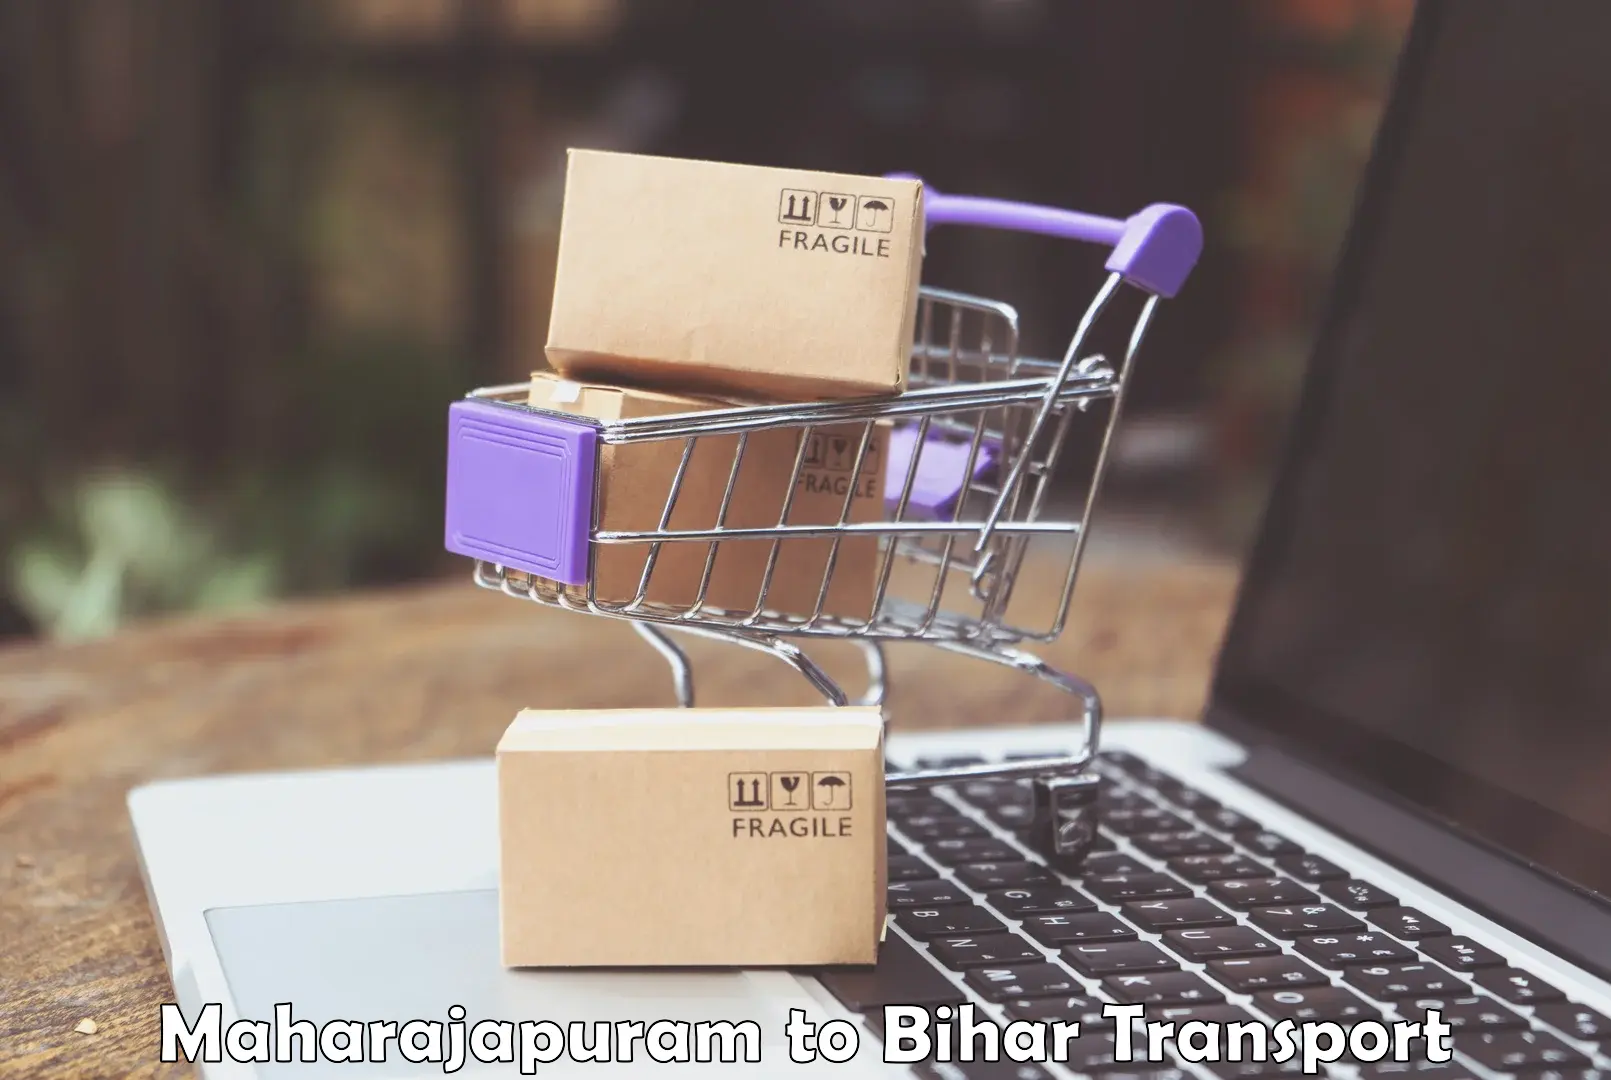 Goods delivery service Maharajapuram to Bihar